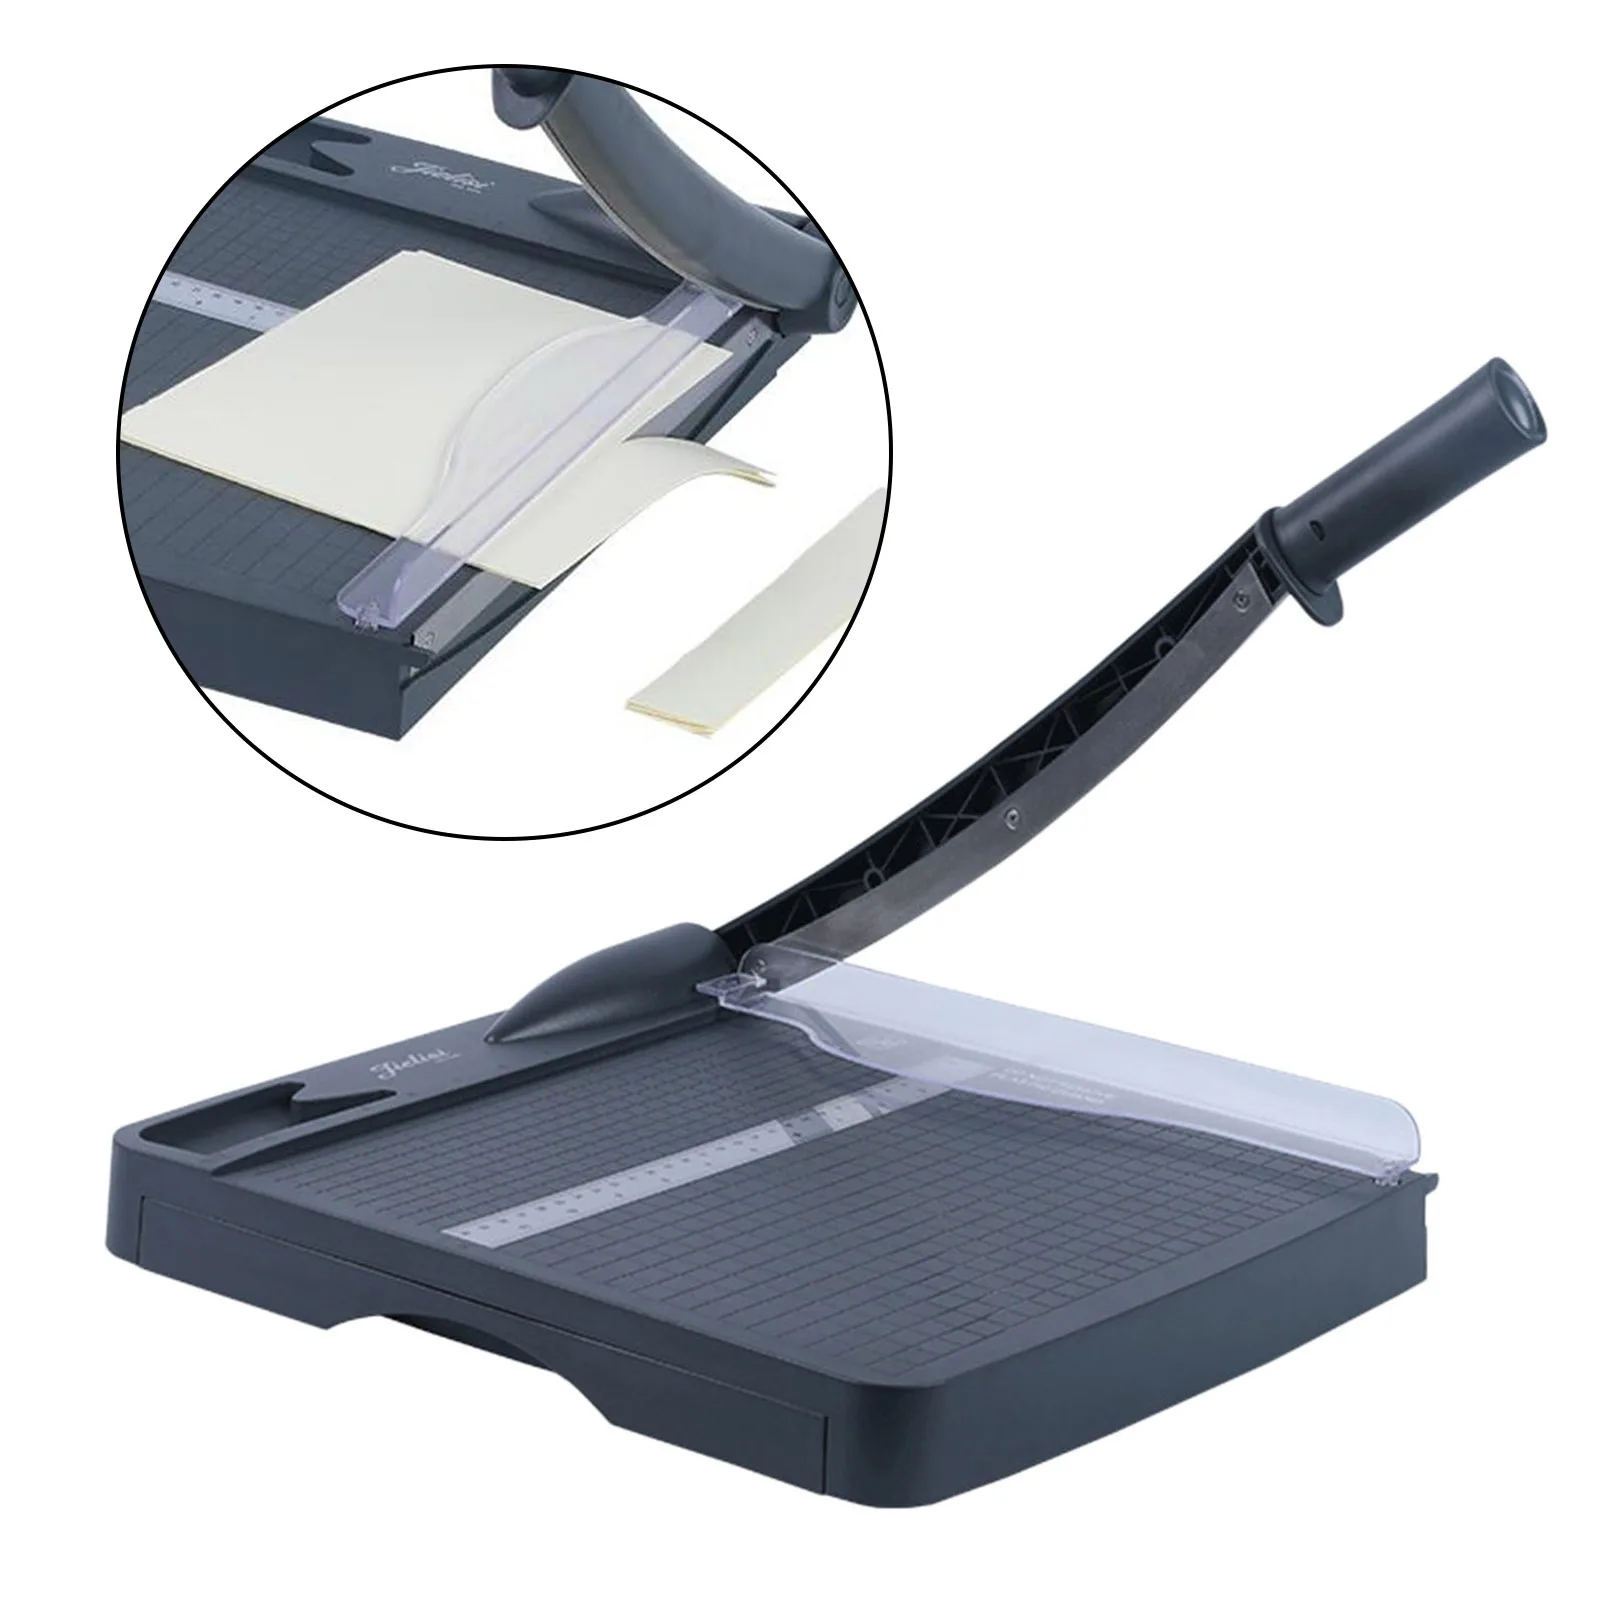 Precision A4 Paper Trimmer Cutting Board Guillotine Safeguard Photo Cutter Origami Card Home